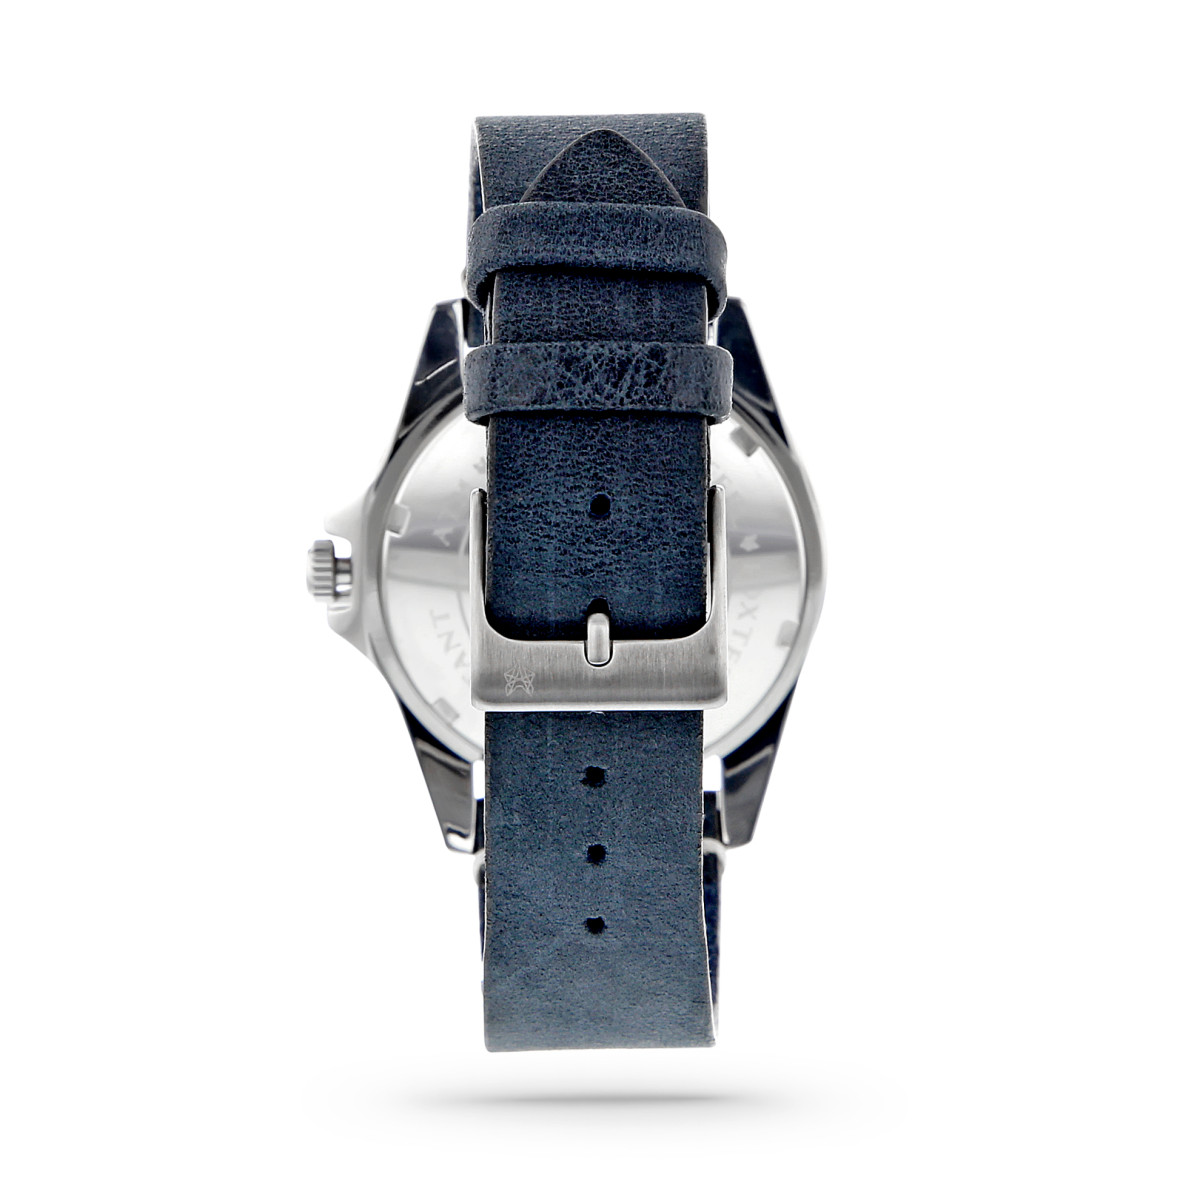 Montre Homme Foxter Sixties bracelet cuir bleu, boitier acier, fond bleu - SIXTIES5